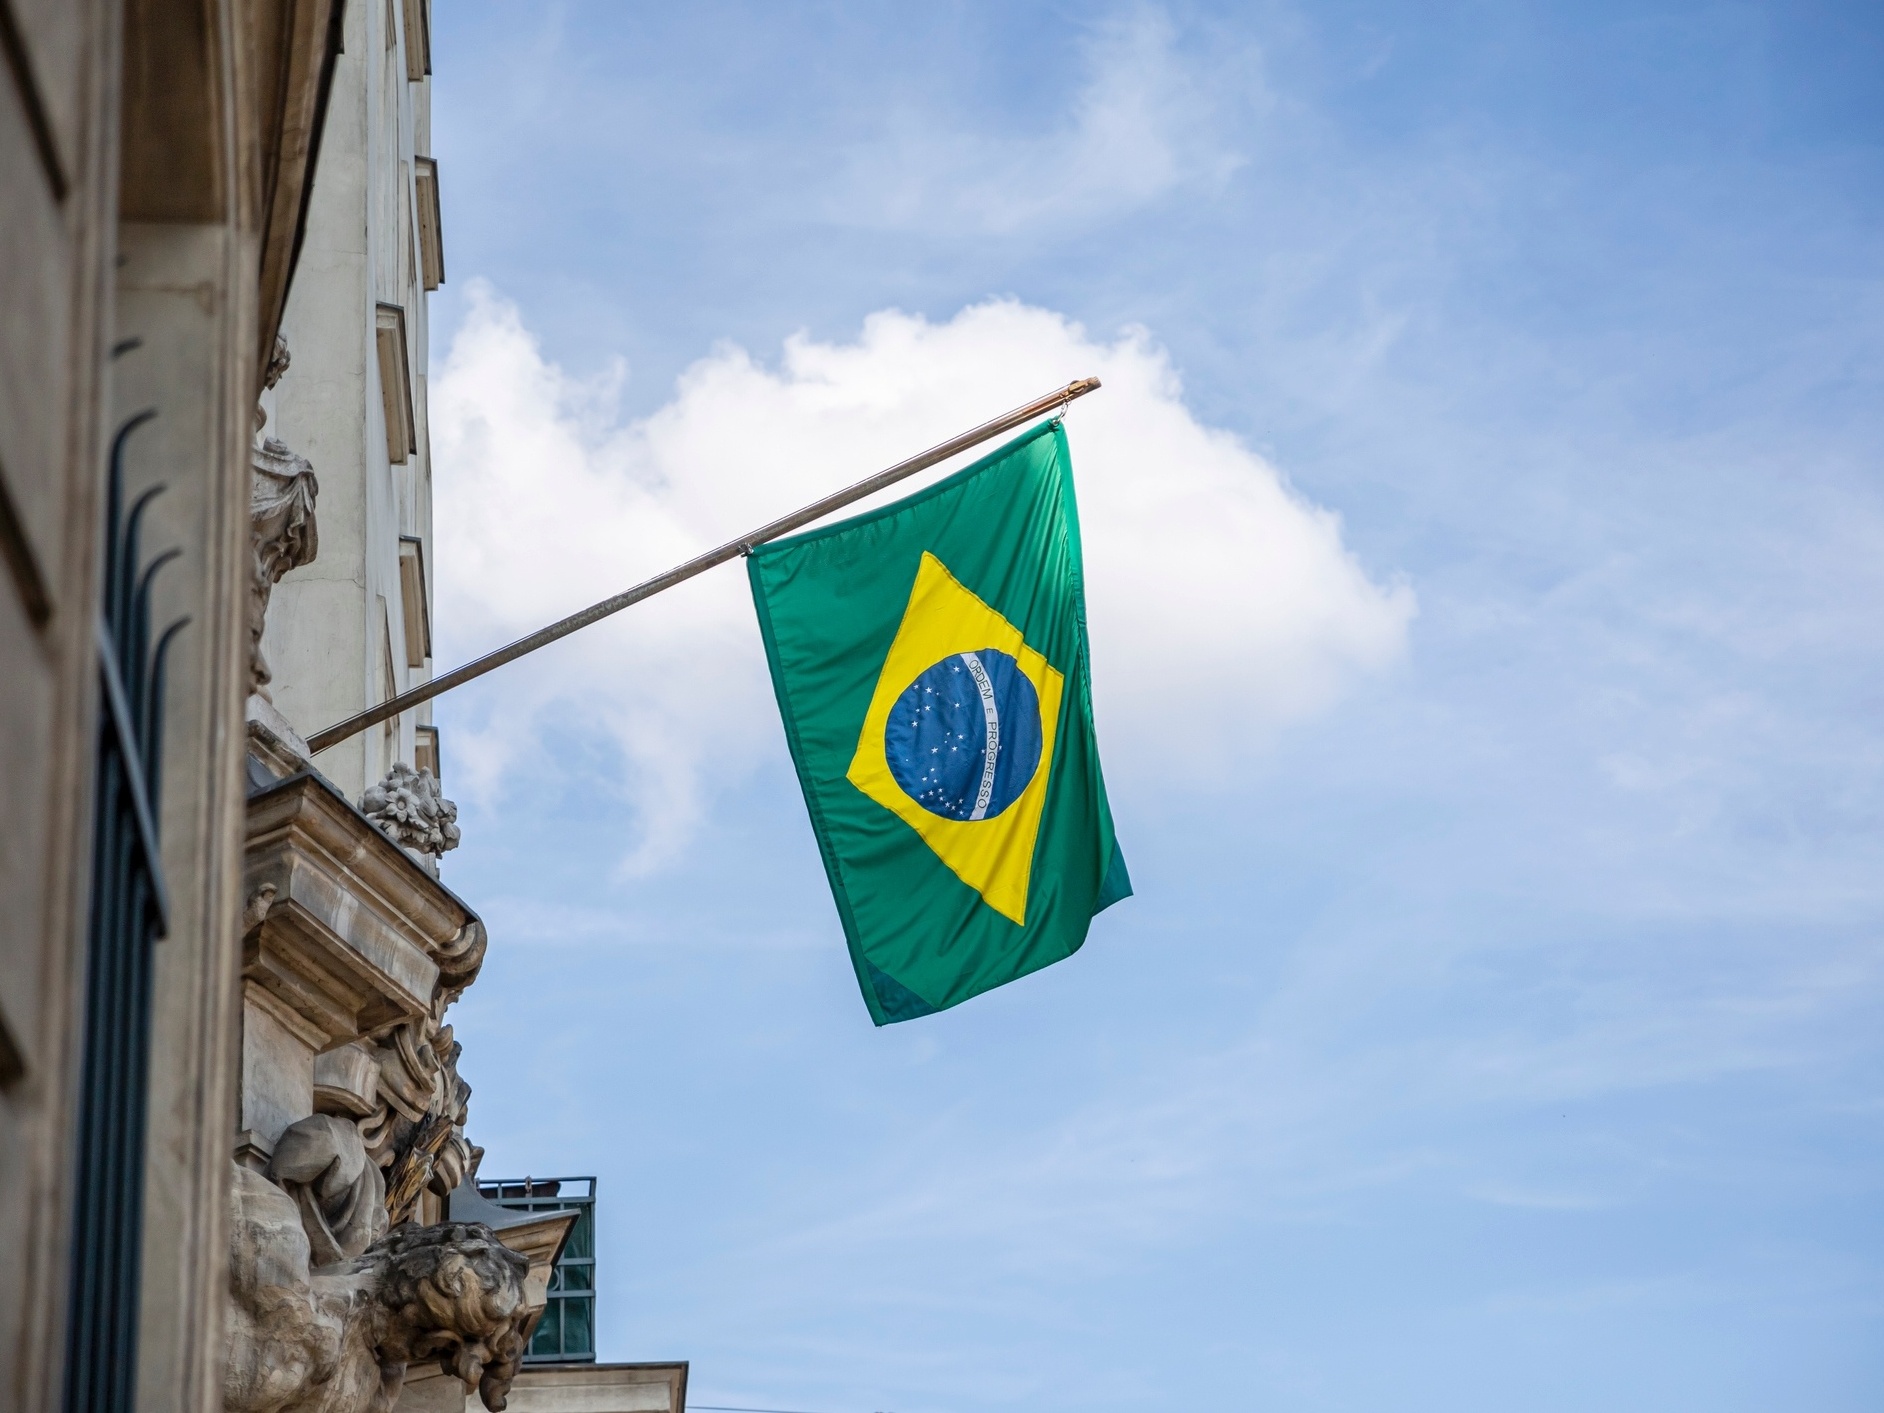 Bandeira-Brasil.png — Portal da Legislação